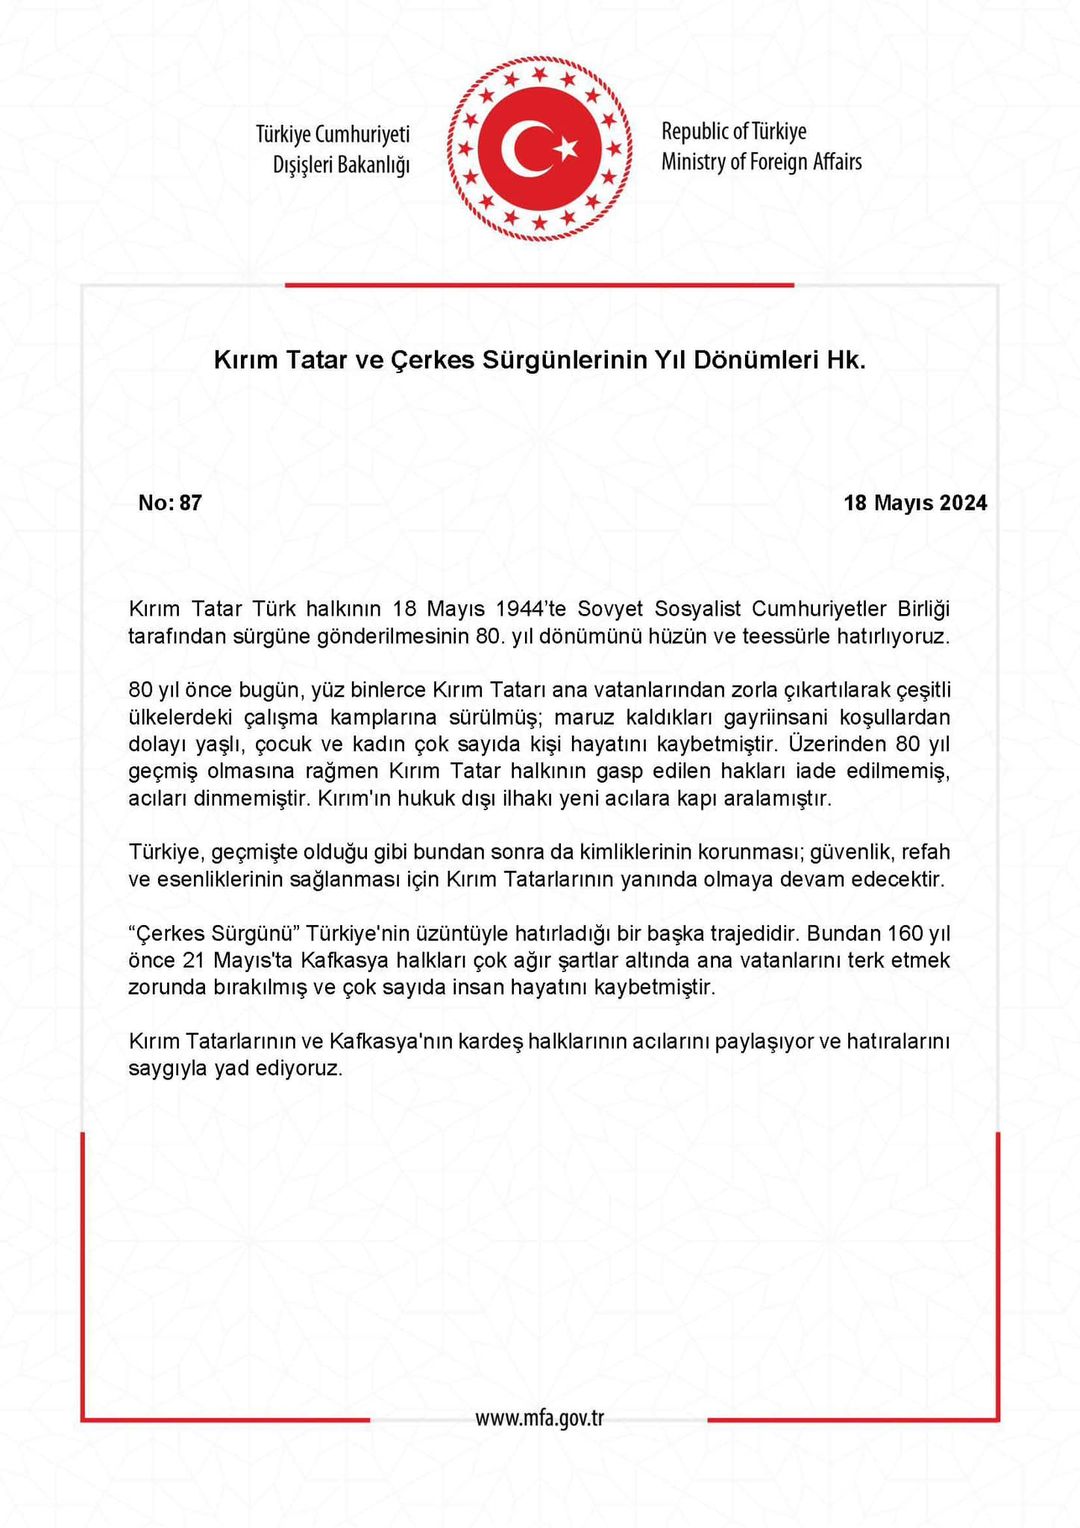 Kırım Tatar ve Çerkes Sürgünleri Yıl Dönümü Vesilesiyle Türkiye'den Açıklama